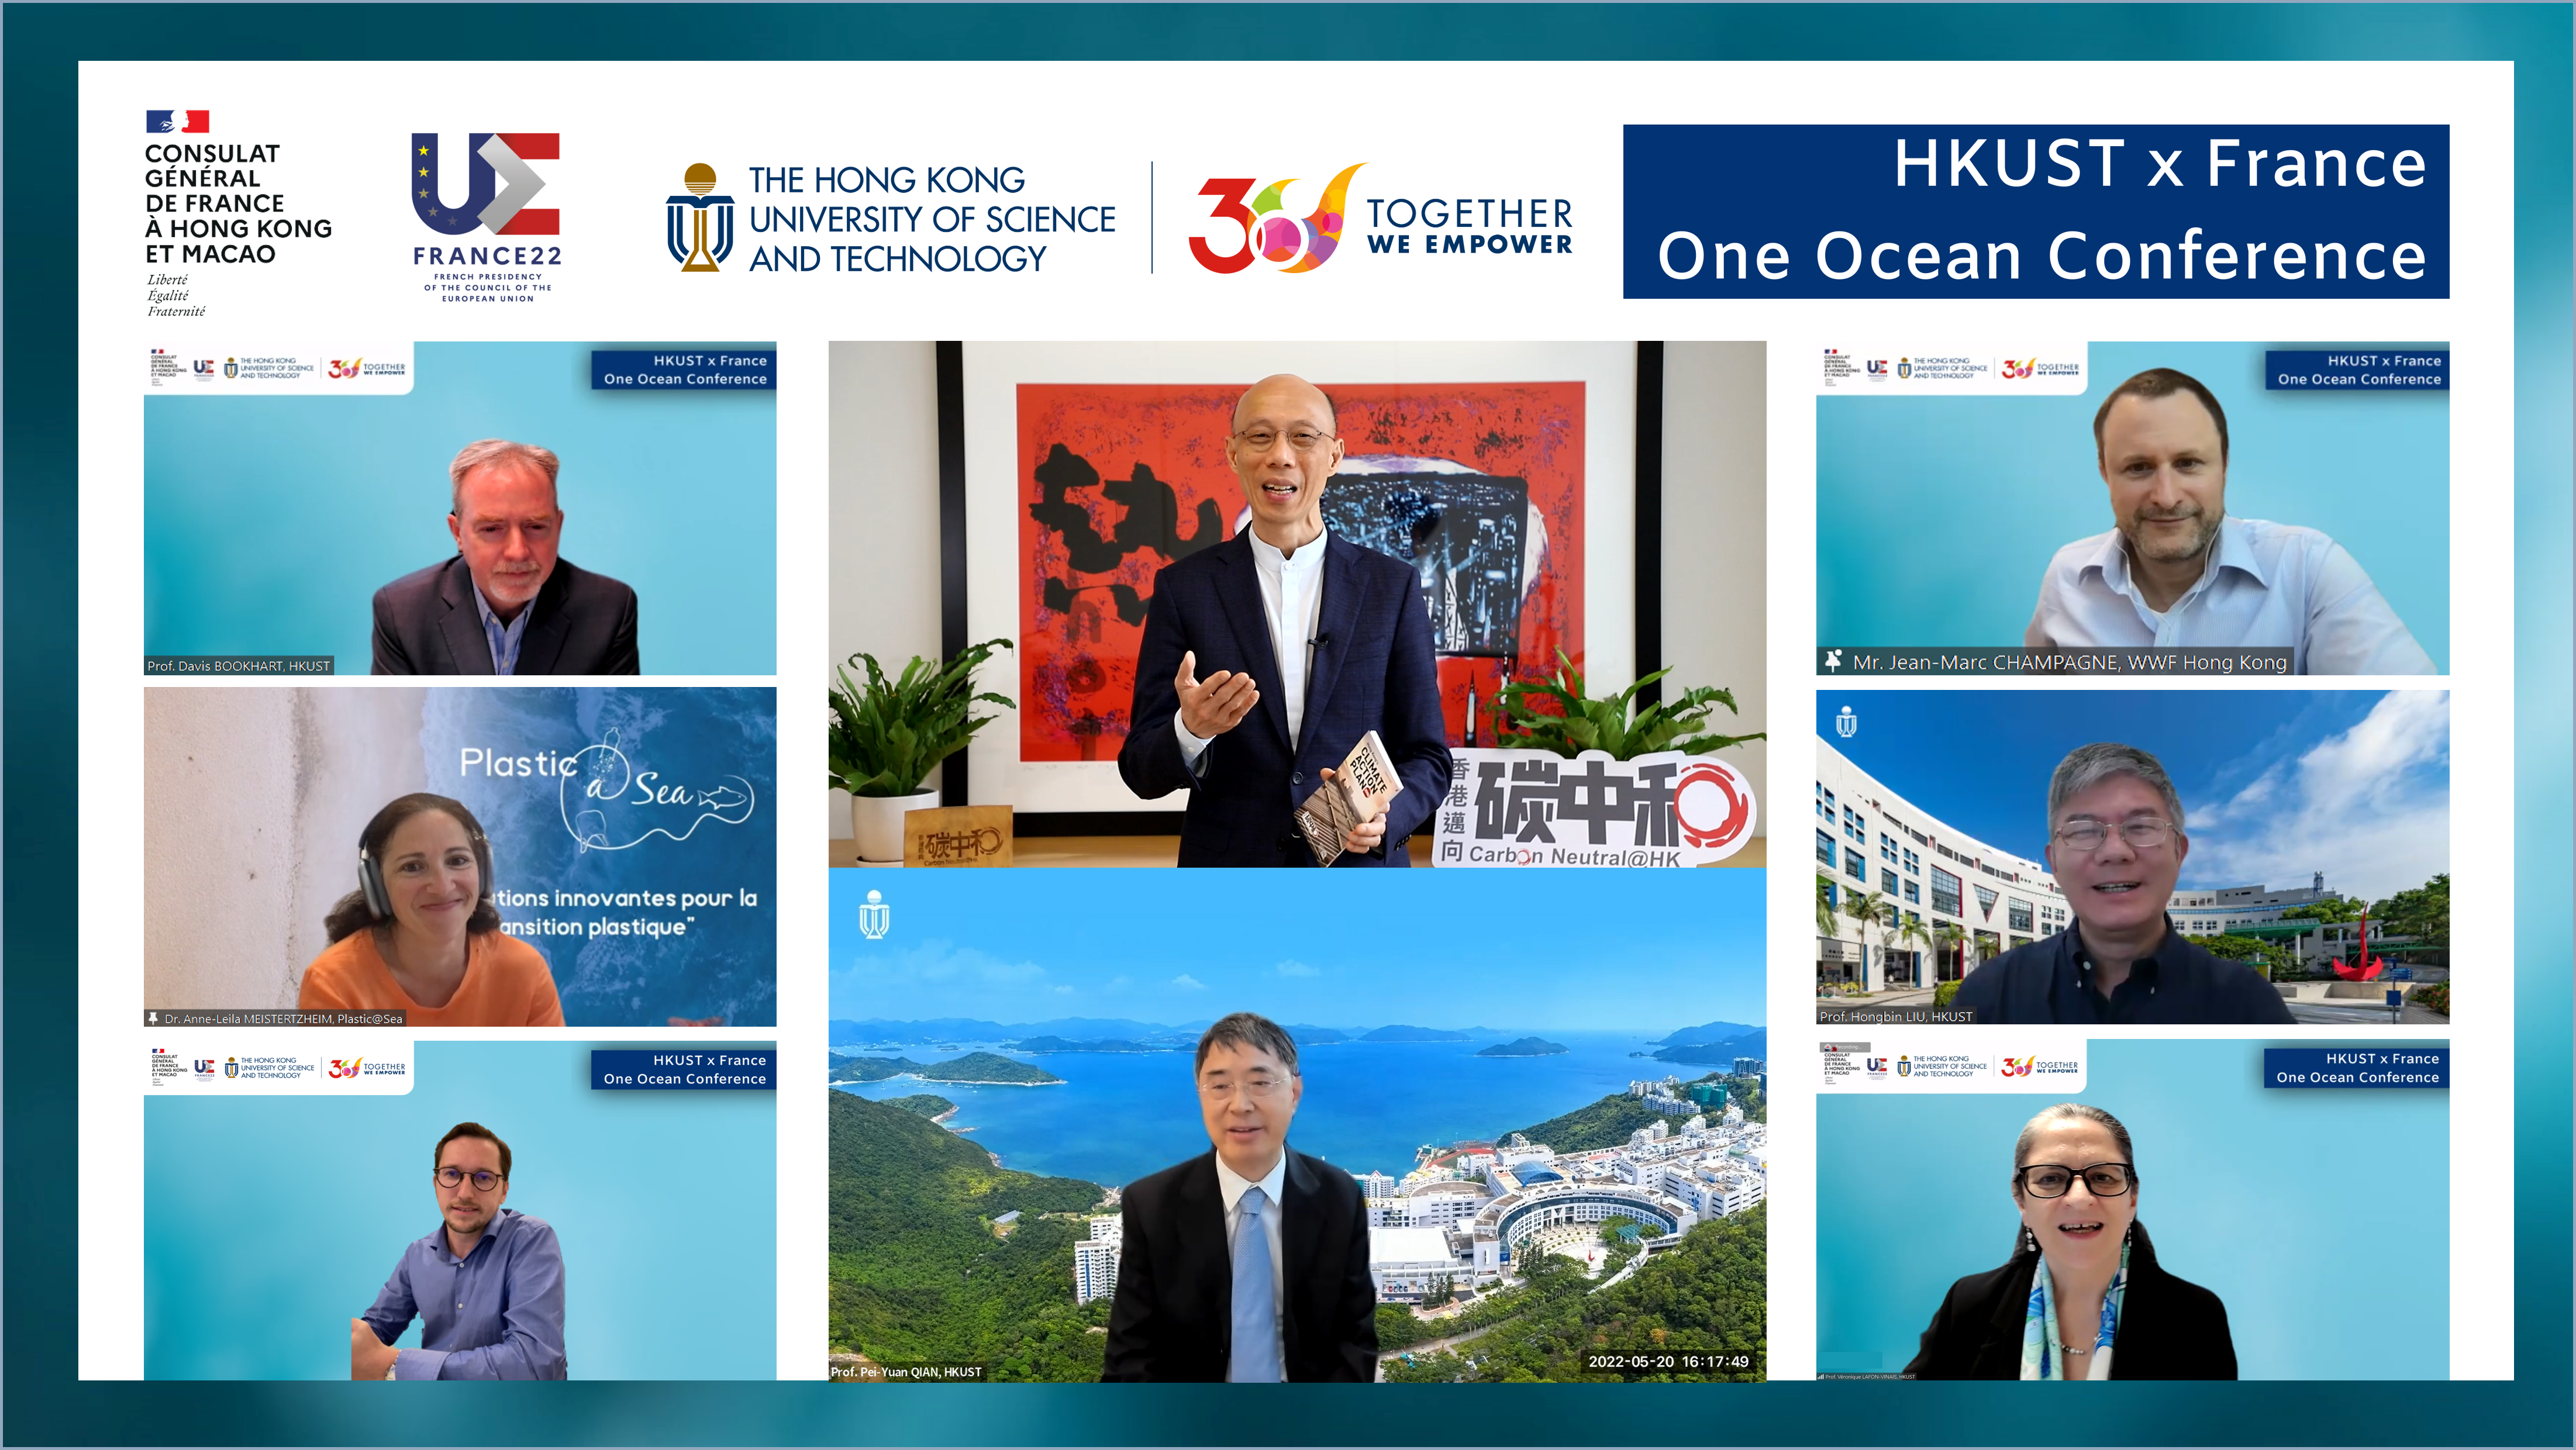 科大与法国驻港澳总领事馆刚合作举办「One Ocean Conference」学术会议。